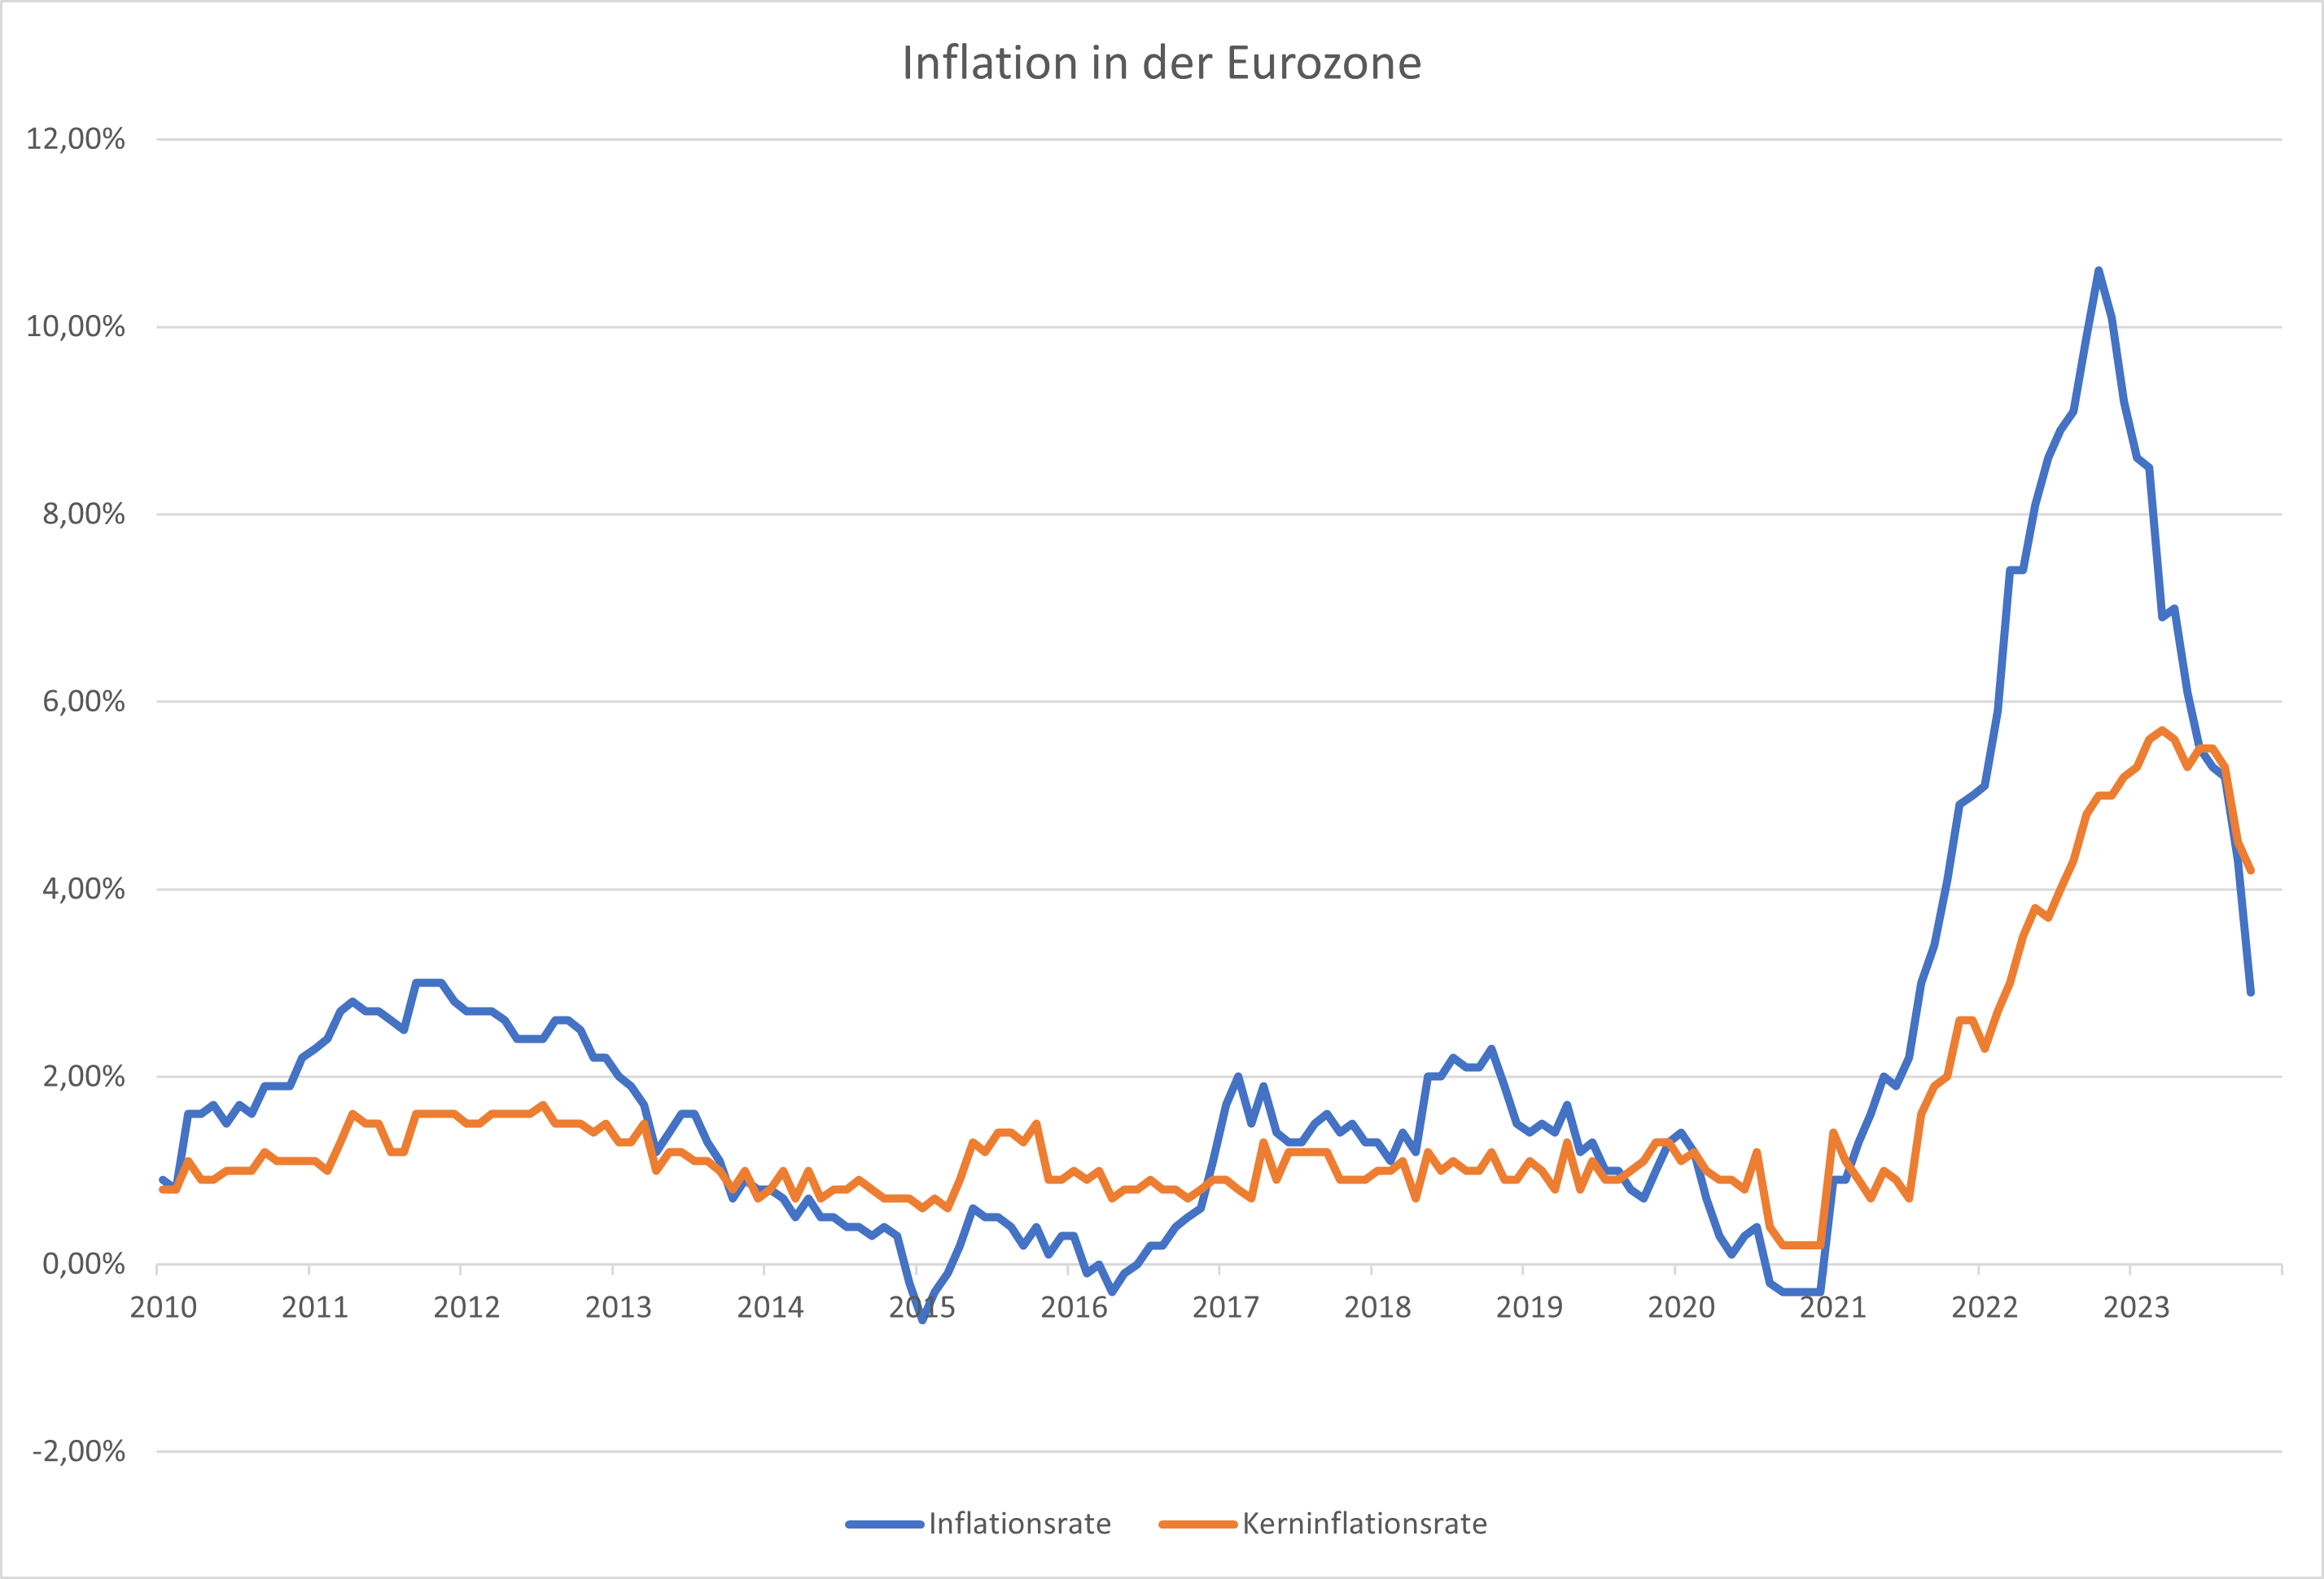 Inflationsdaten-könnten-die-Richtung-weisen-Kommentar-Oliver-Baron-stock3.com-2